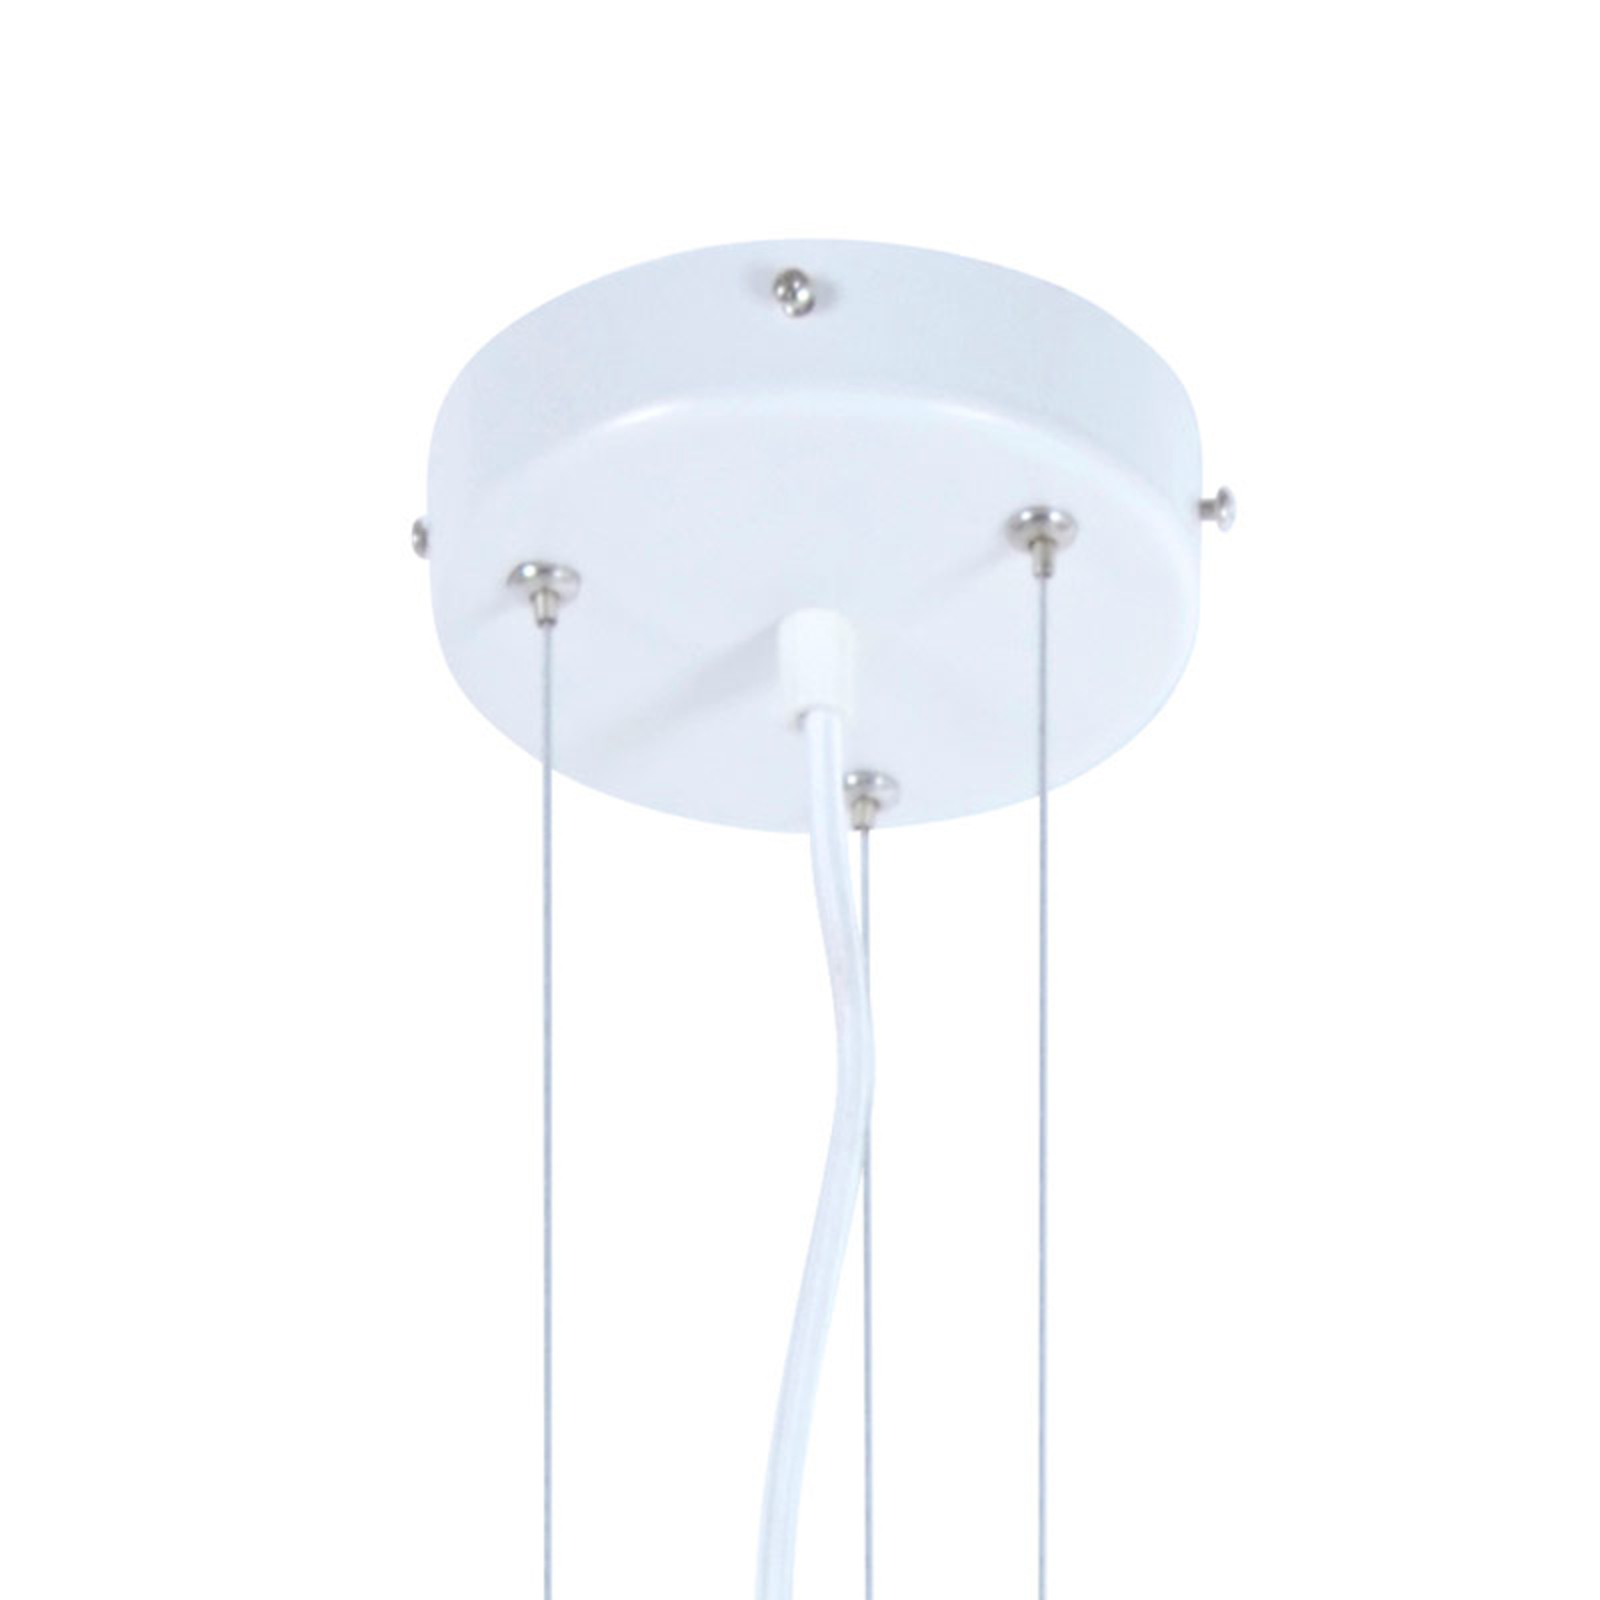 Forestier Libellule L pendant lamp, 100 cm, white